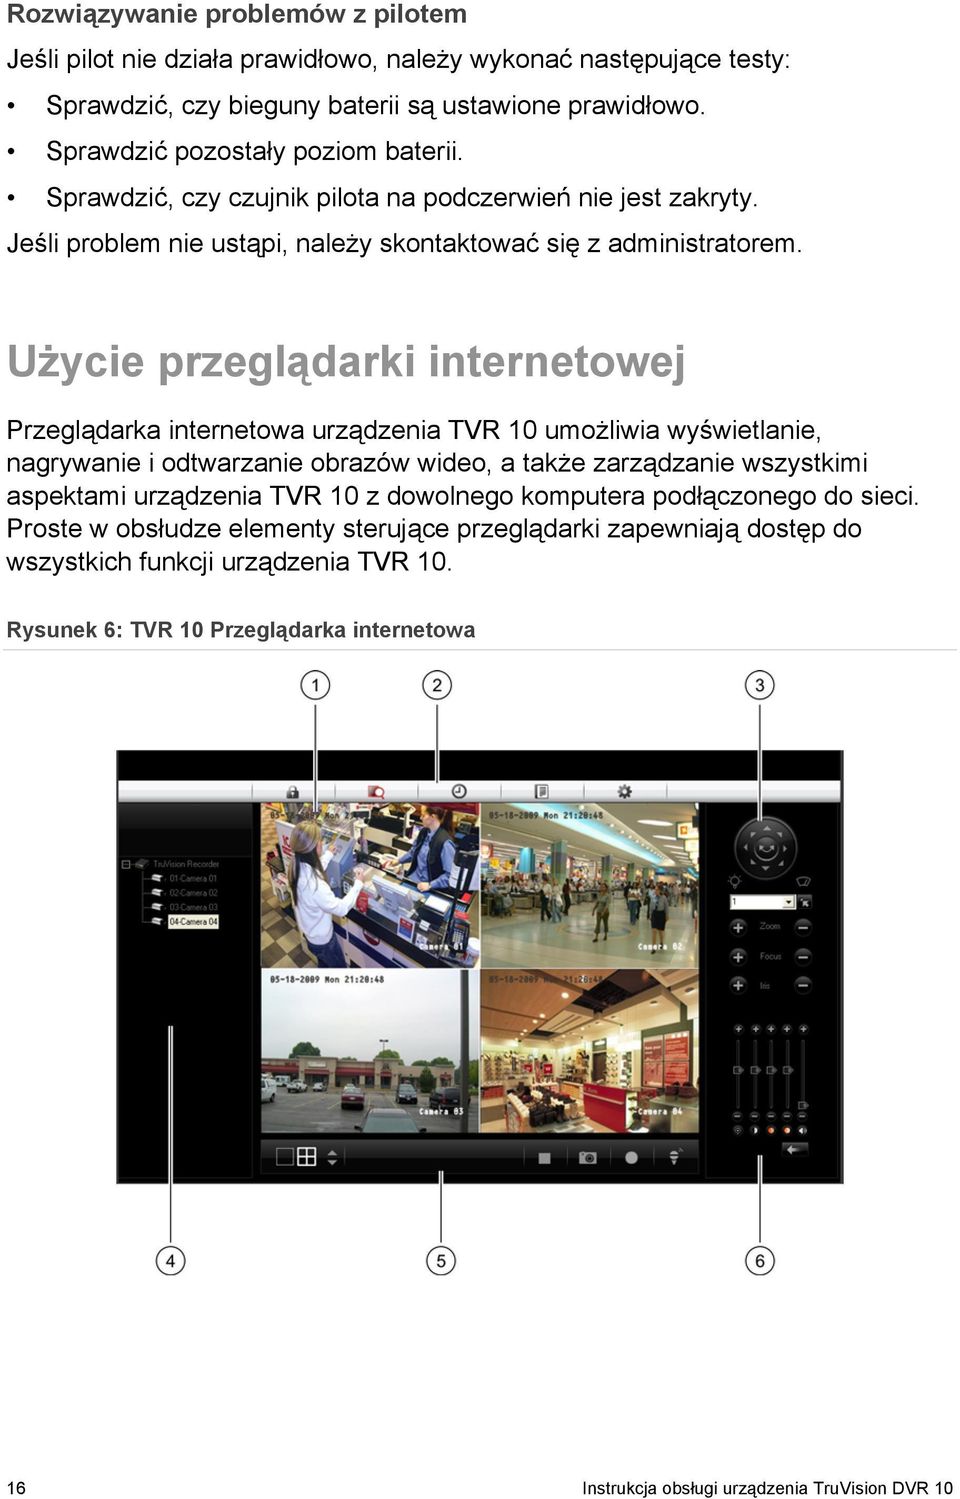 Użycie przeglądarki internetowej Przeglądarka internetowa urządzenia TVR 10 umożliwia wyświetlanie, nagrywanie i odtwarzanie obrazów wideo, a także zarządzanie wszystkimi aspektami urządzenia